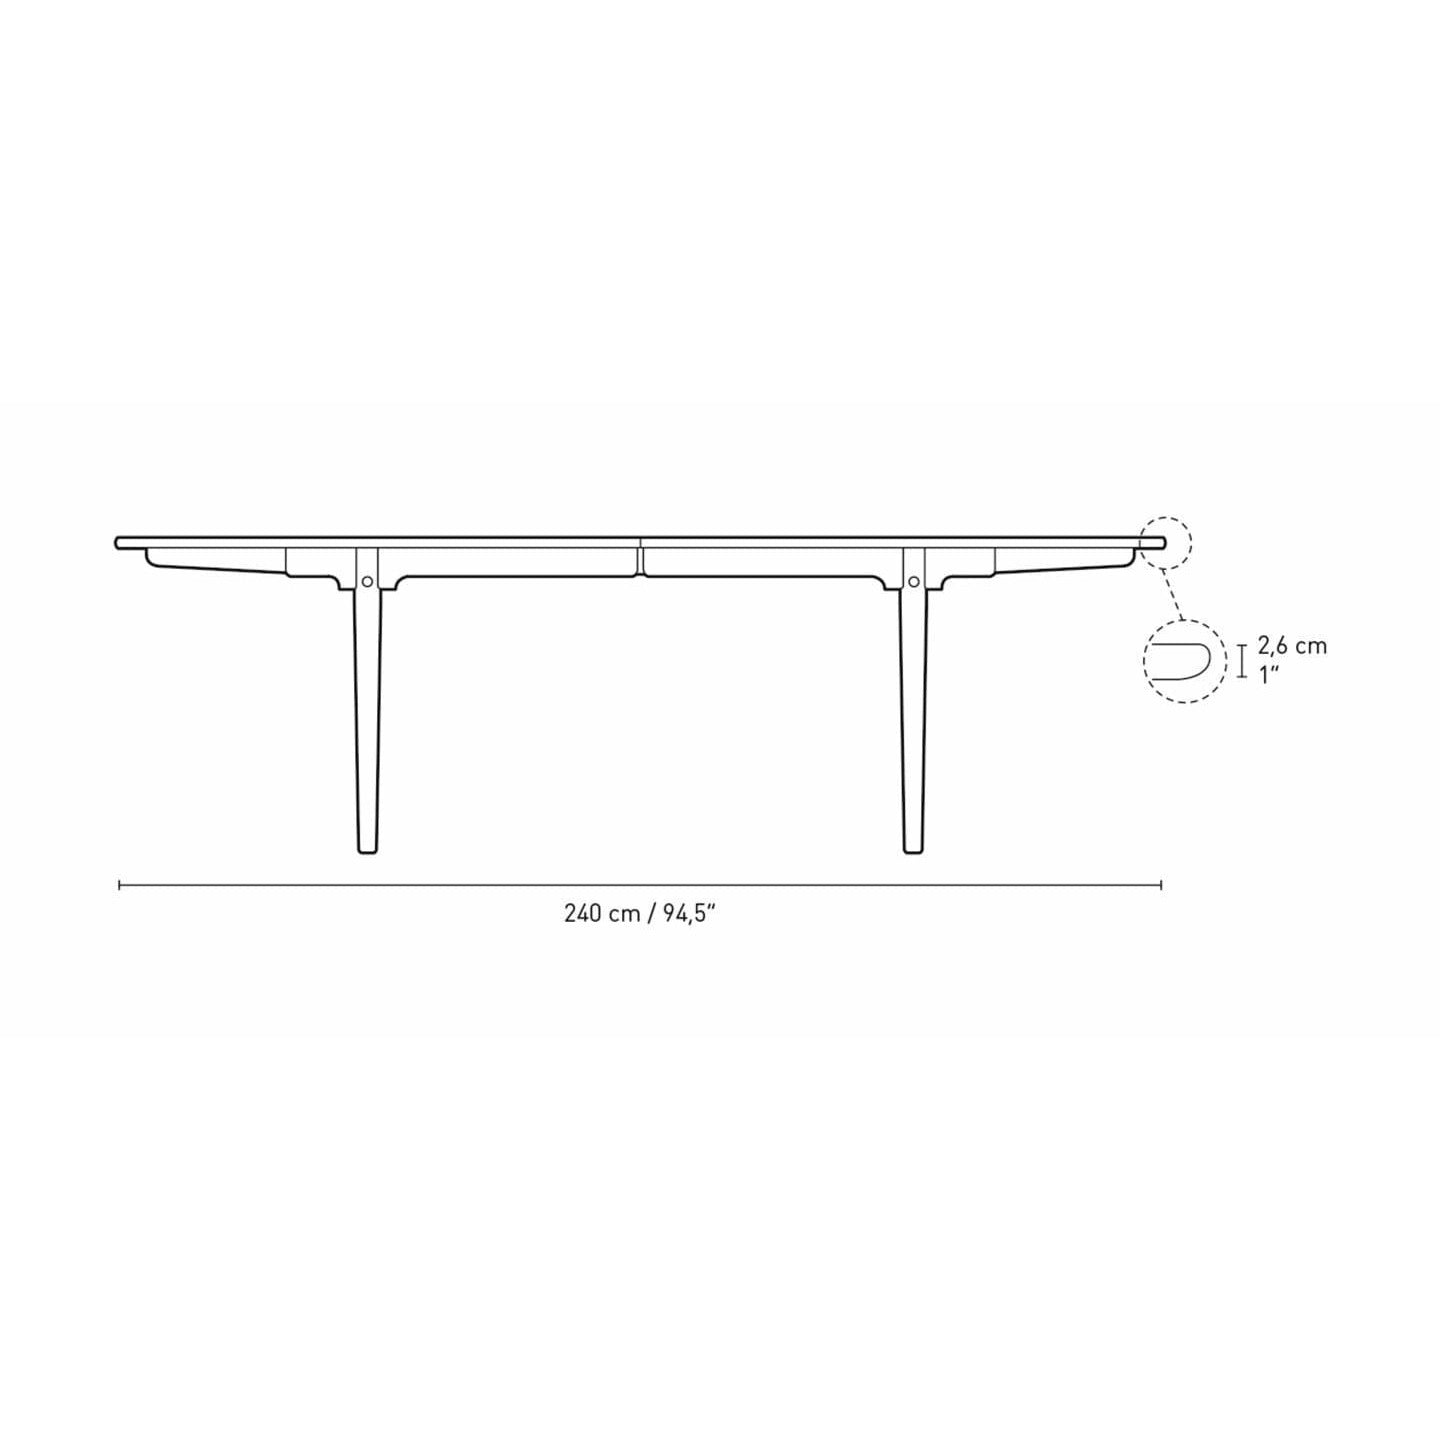 Carl Hansen CH339 matbord designat för 4 utdragbara plattor, valnötoljad